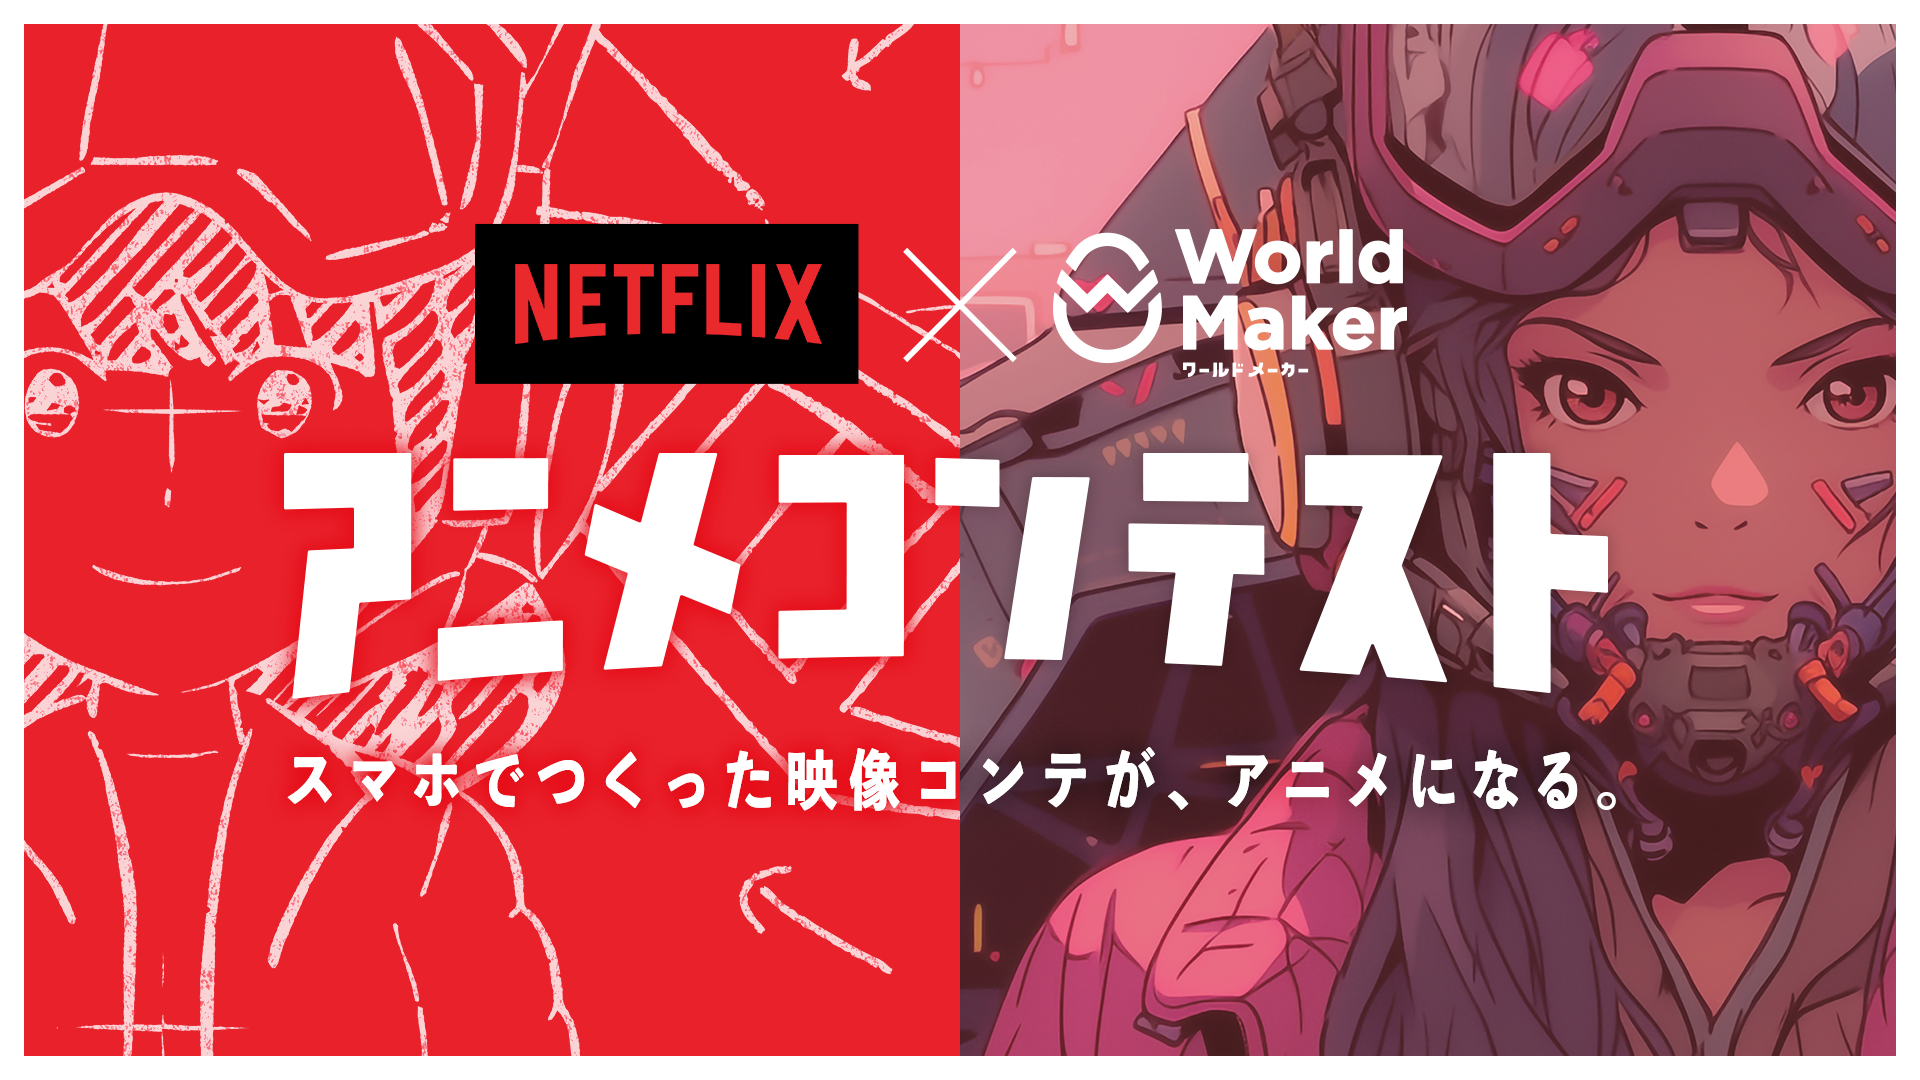 Netflixアニメコンテスト